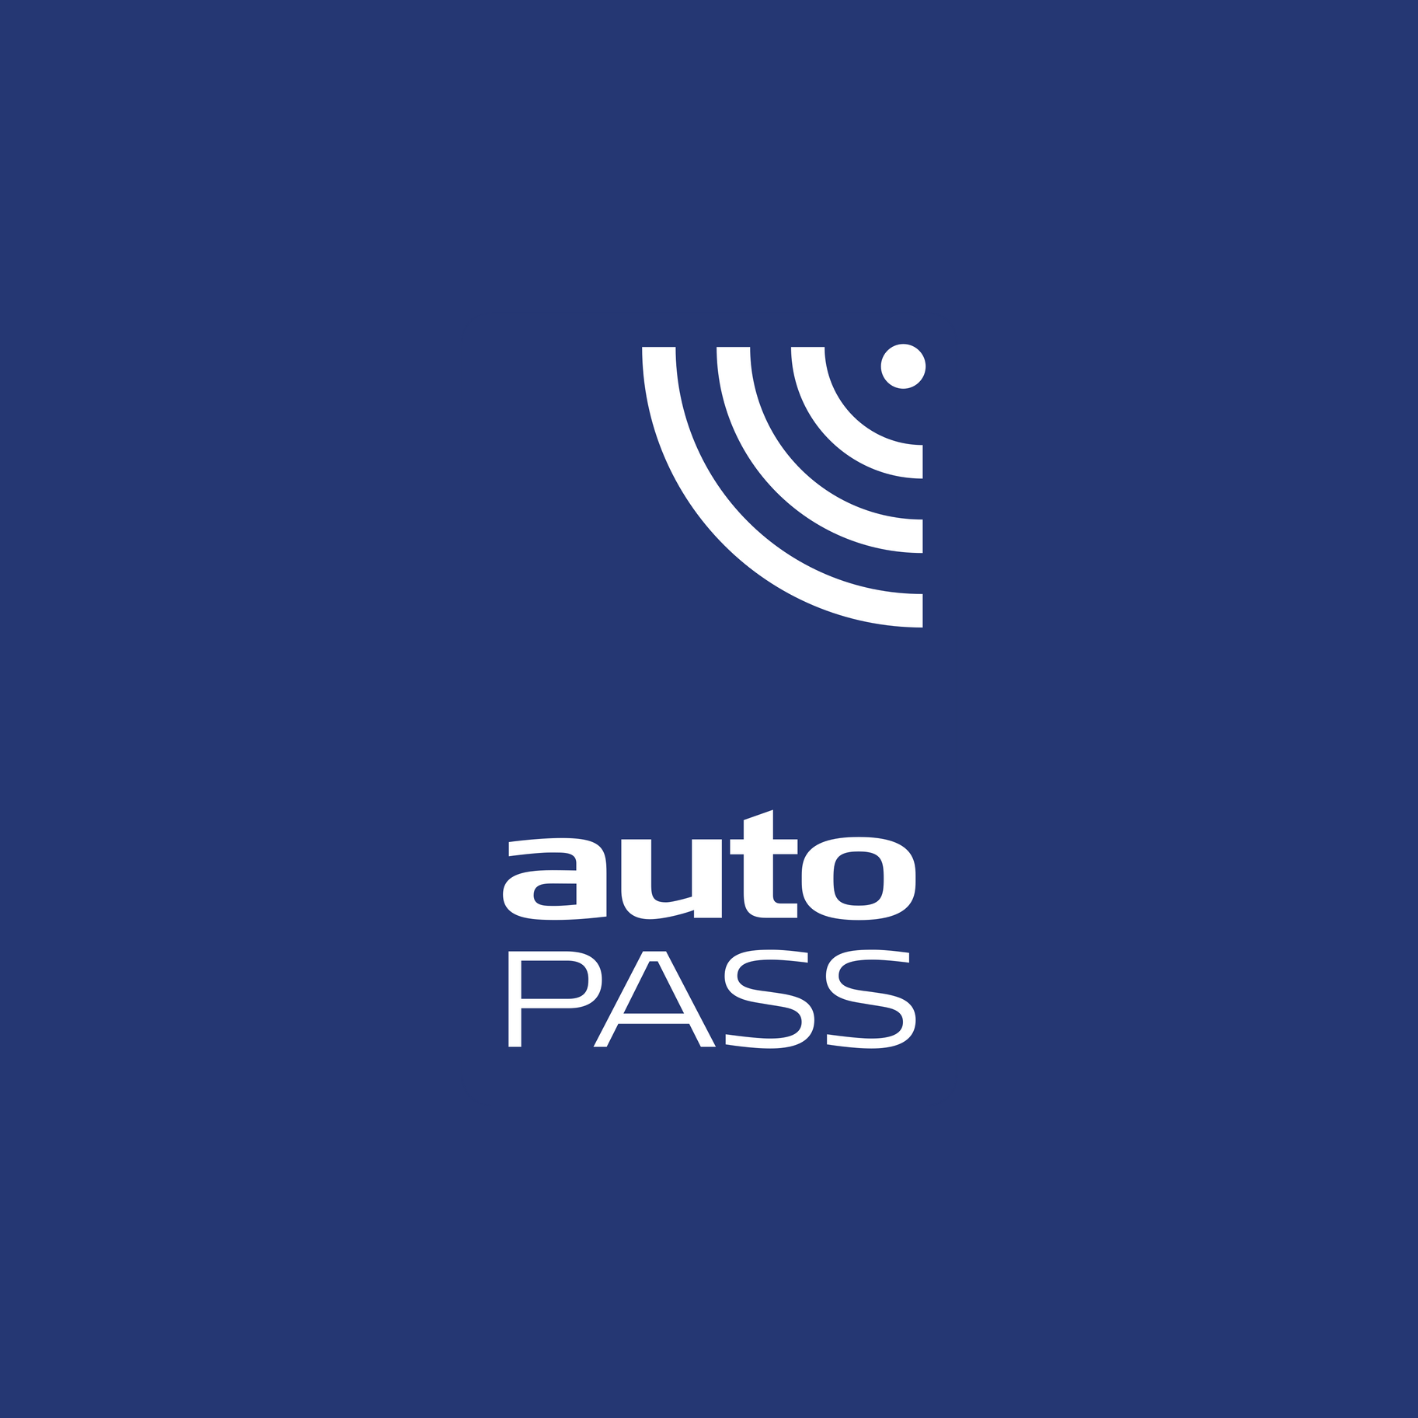 Samodejni-pass-logo-1